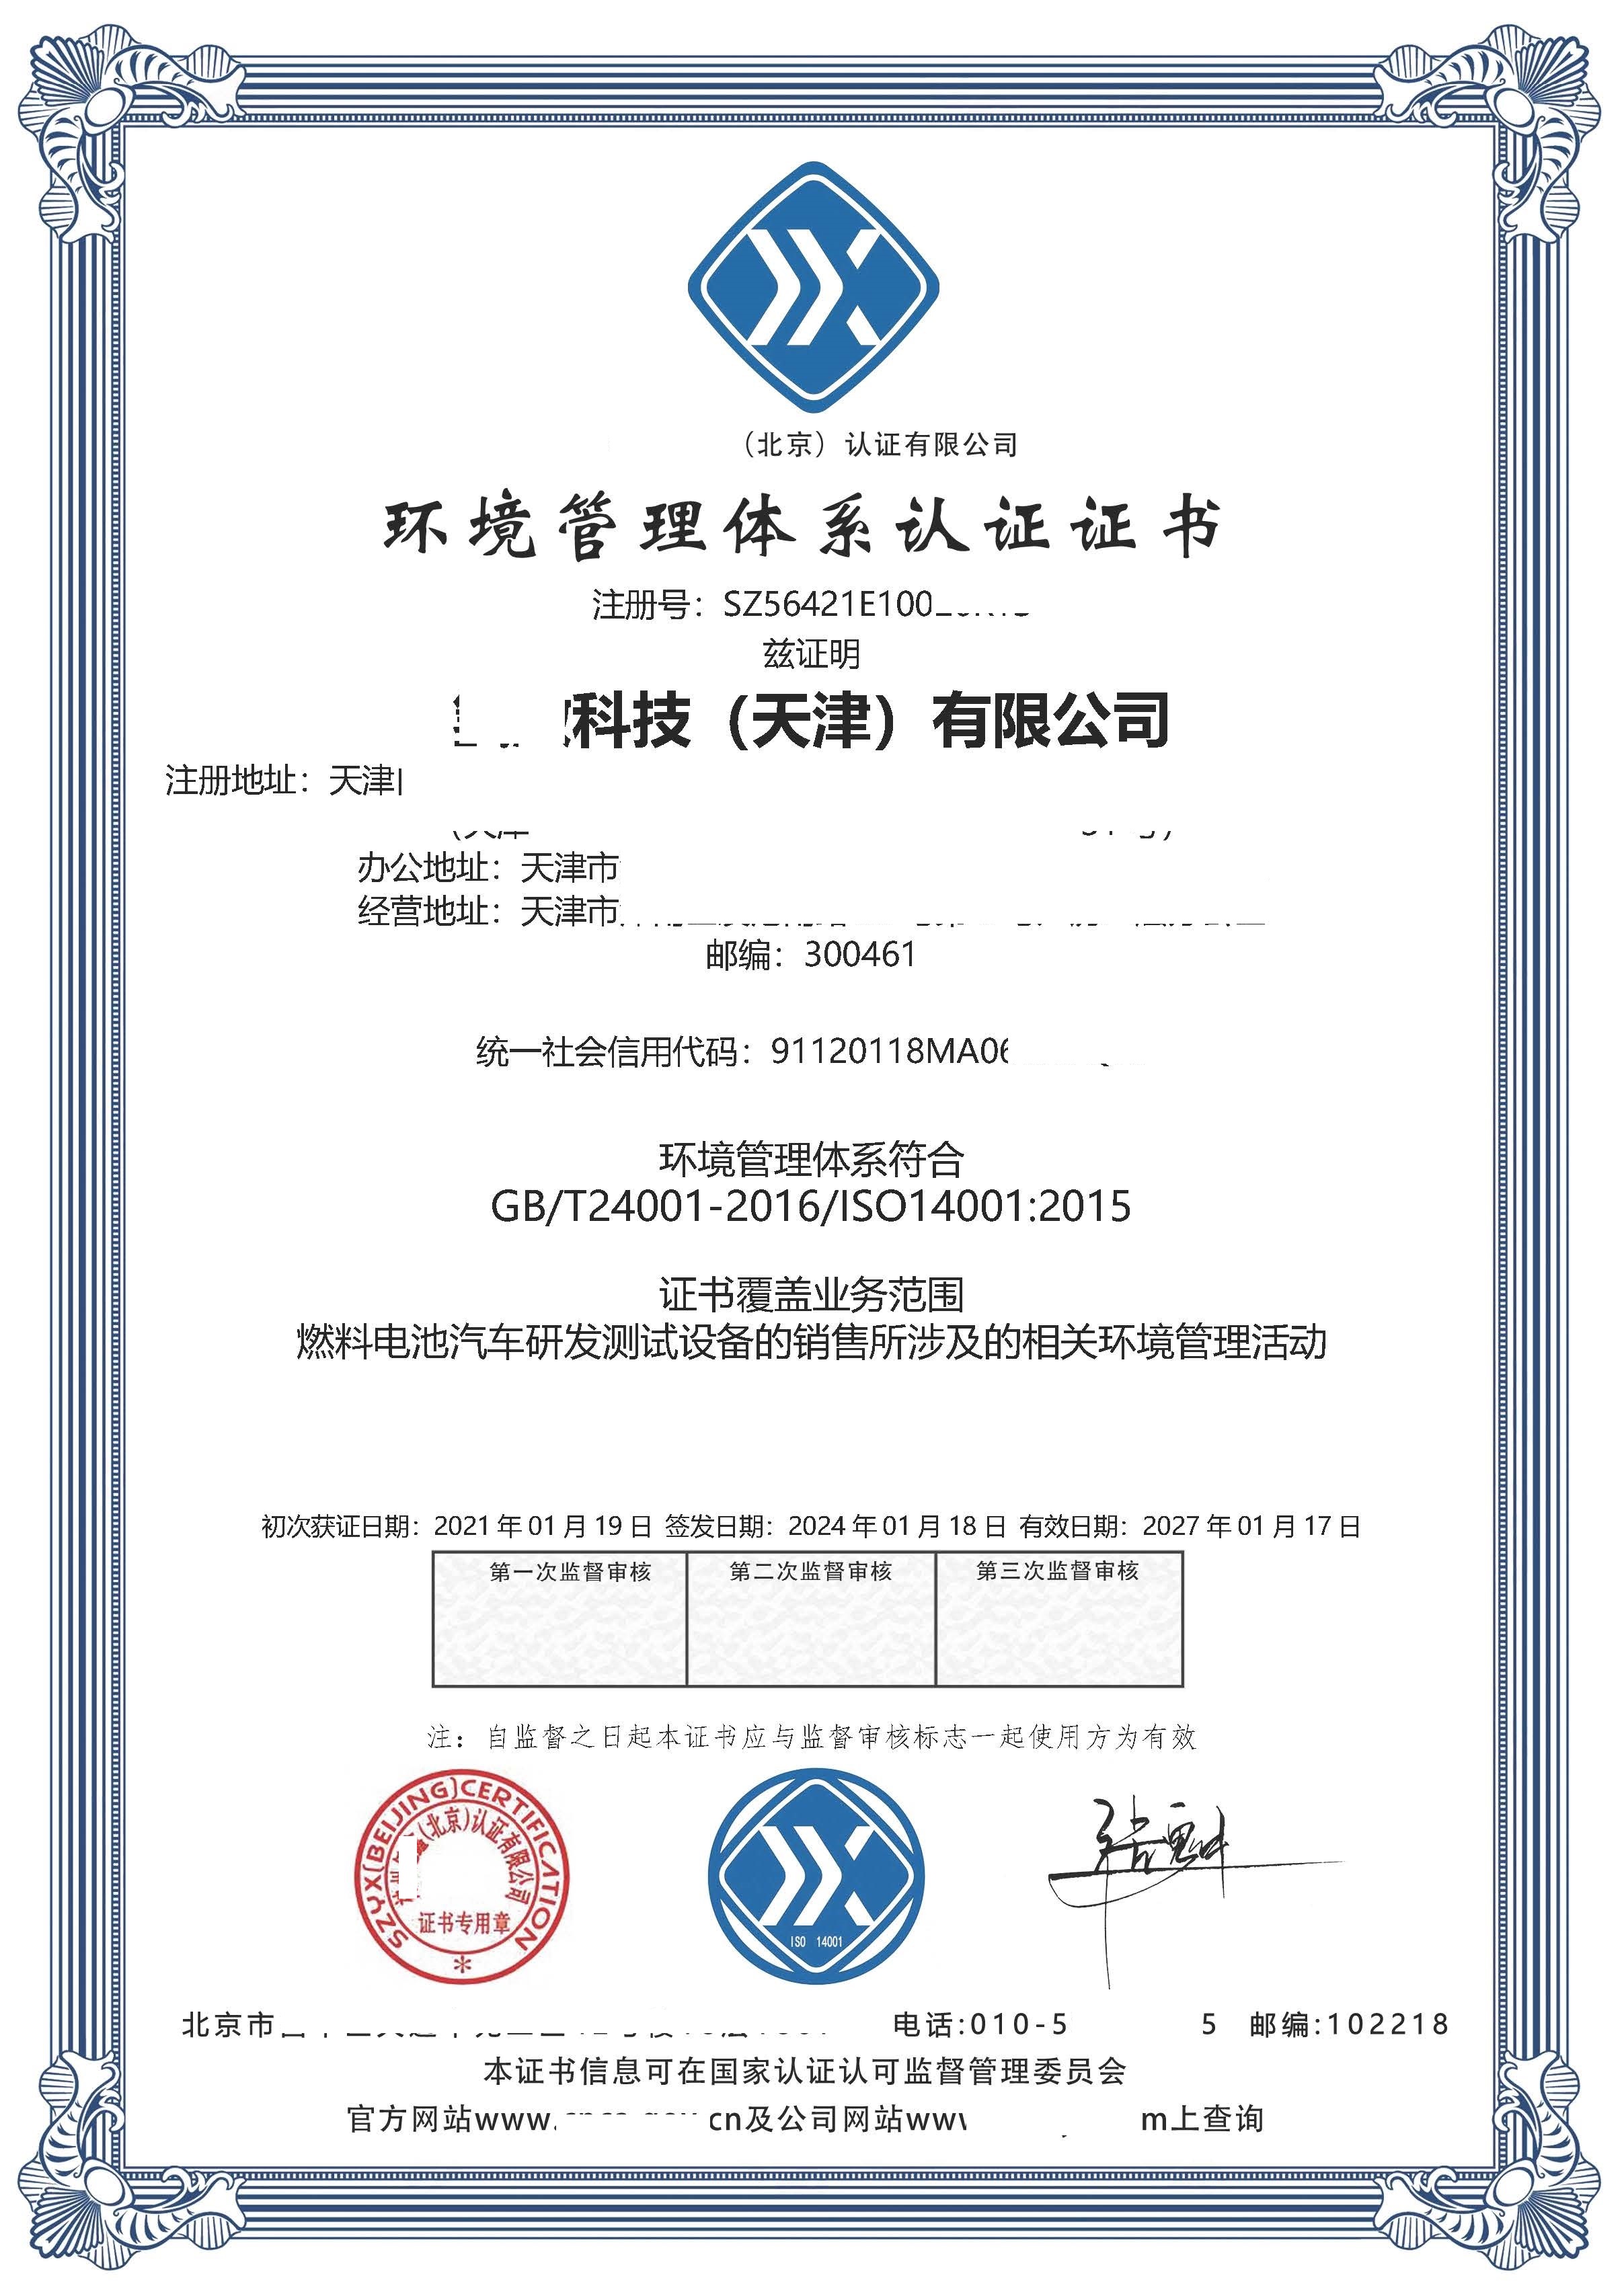 恭喜  ****（天津）有限公司  获得ISO9001质量管理体系认证证书